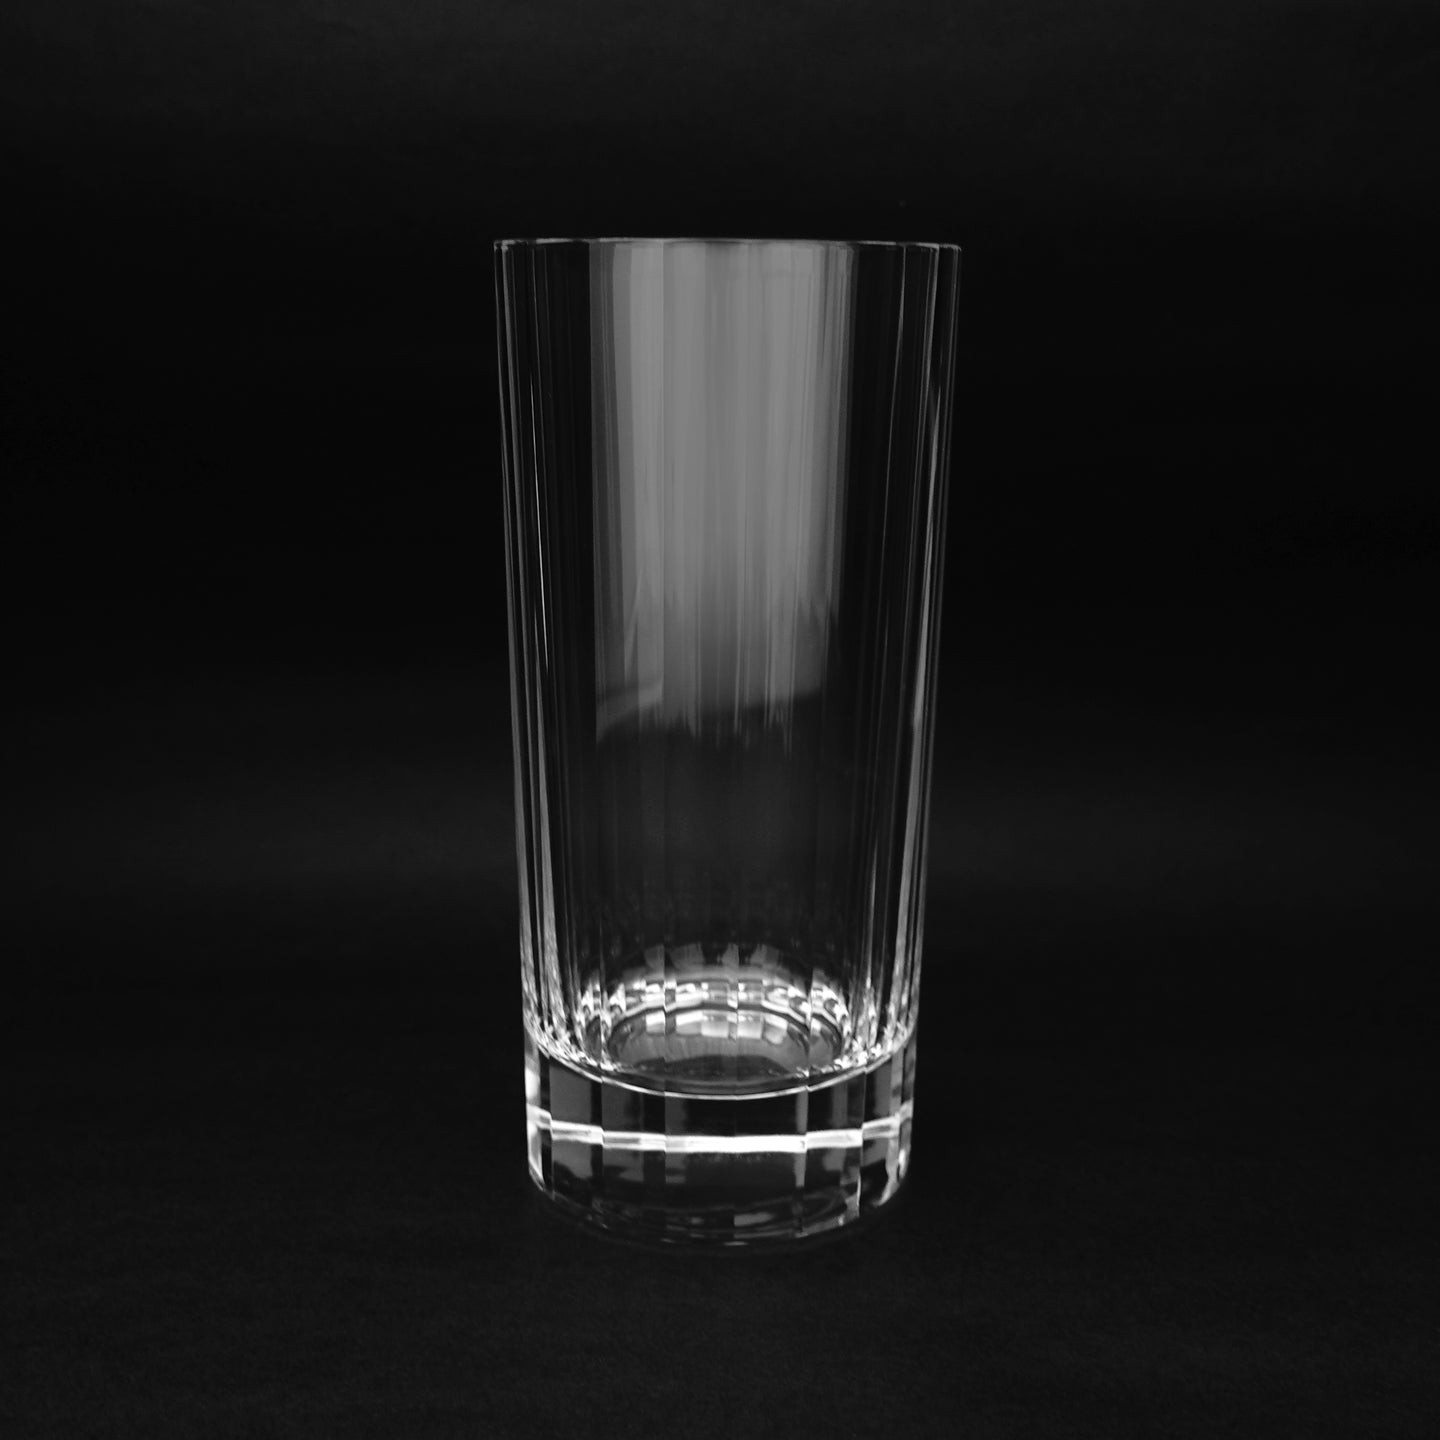 エンタシスハイボール - THE GLASS GIFT SHOP SOKICHI